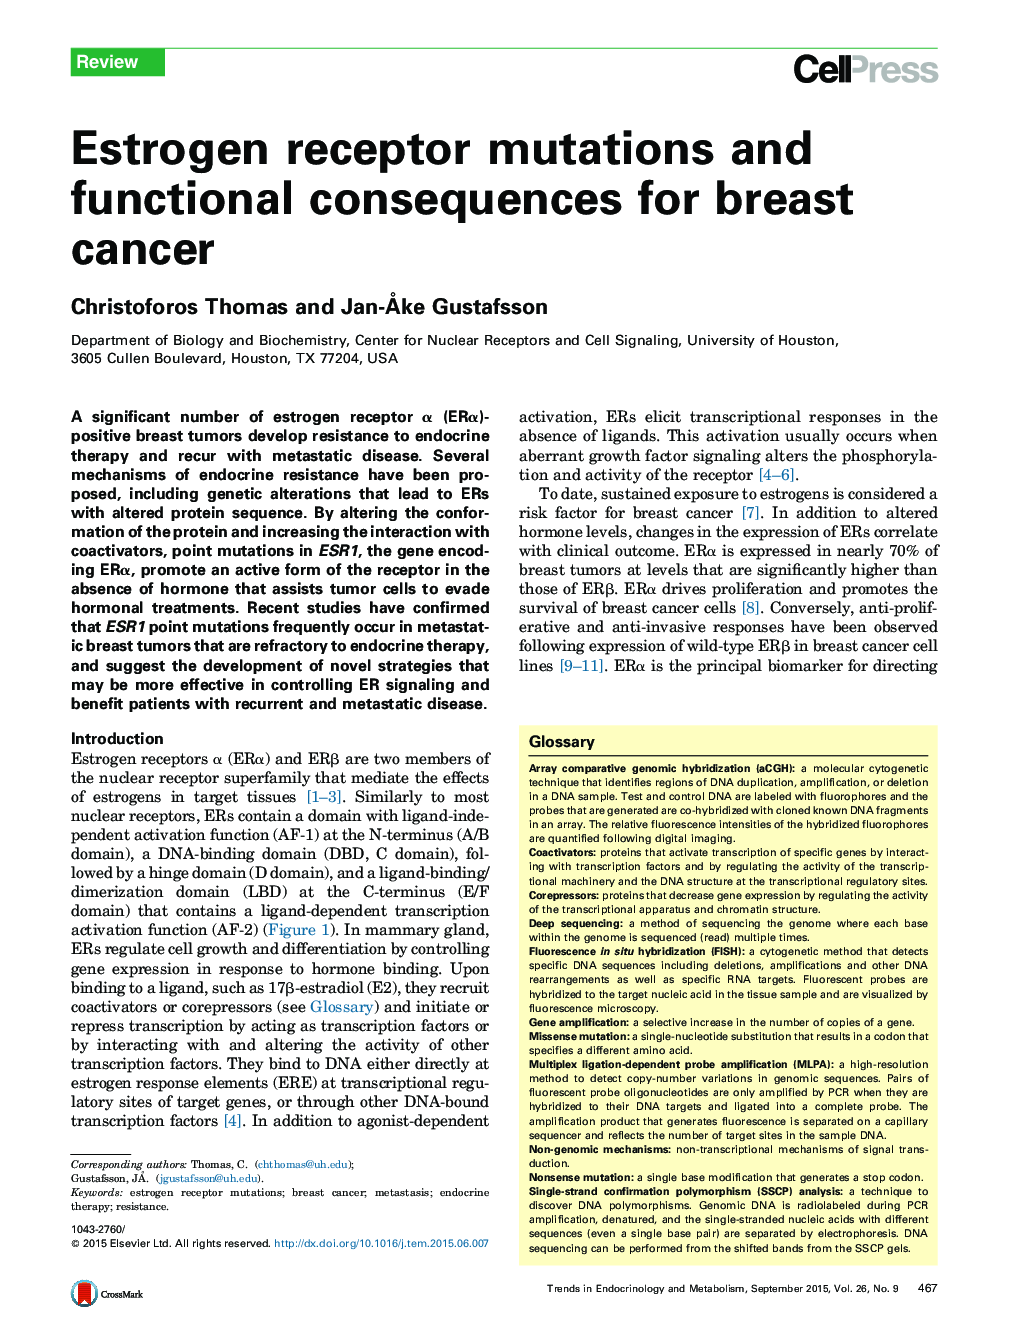 جهش گیرنده های استروژن و پیامدهای عملکردی برای سرطان پستان 